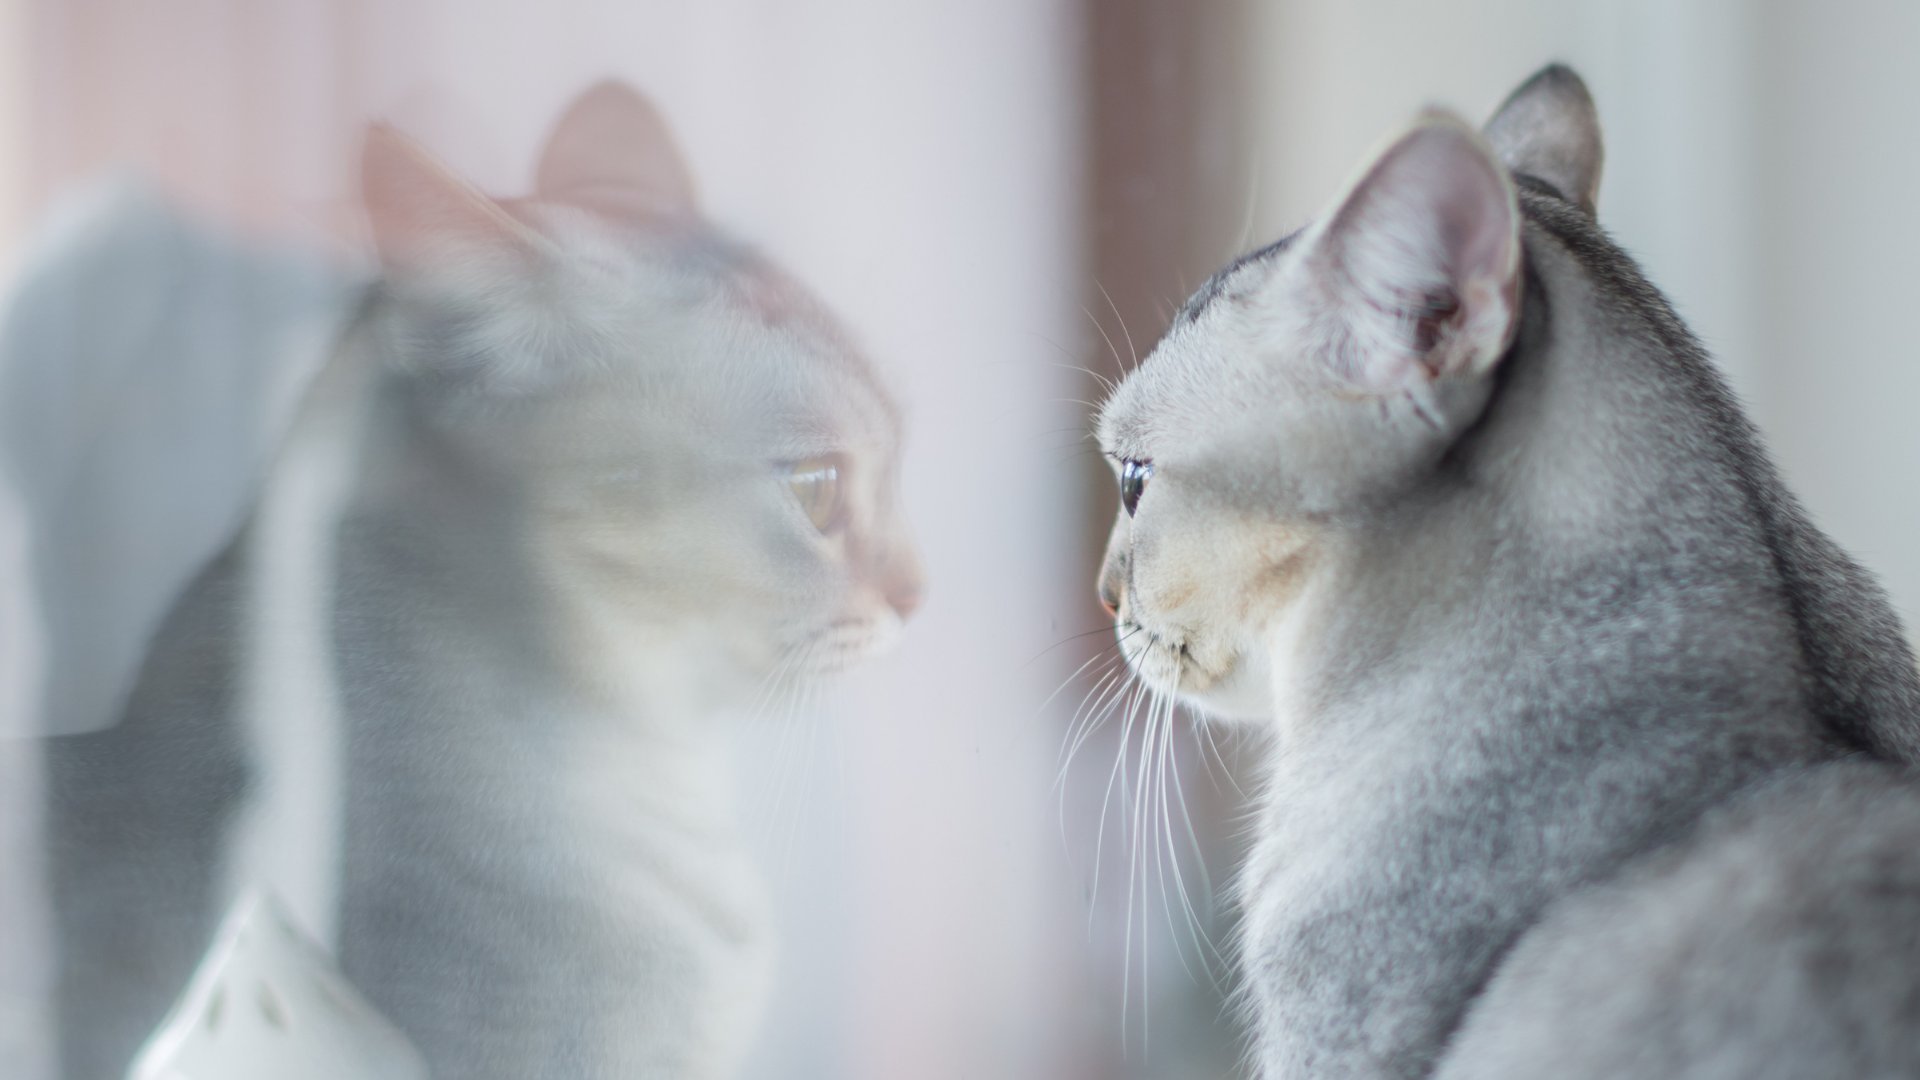 Gato olhando pela janela, que reflete sua imagem